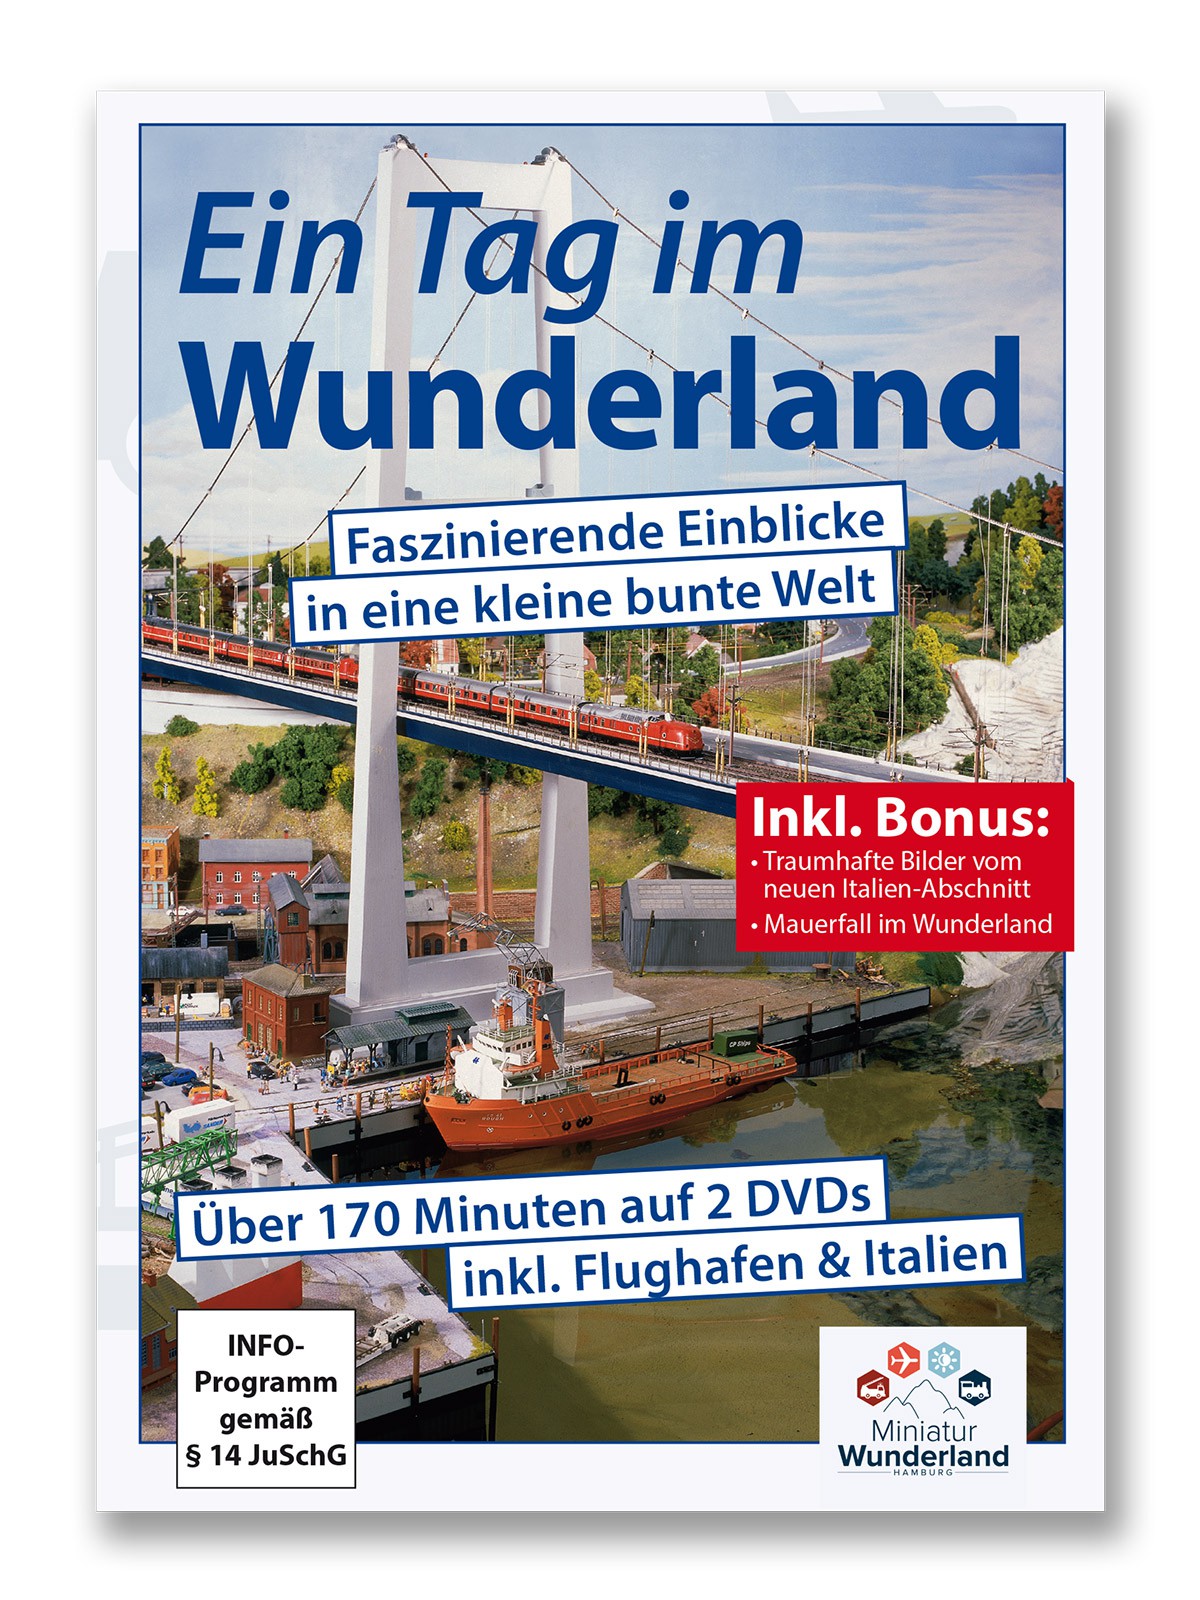 Wunderland Doppel-DVD "Ein Tag im Wunderland"  UPDATE incl. Italien-Abschnitt